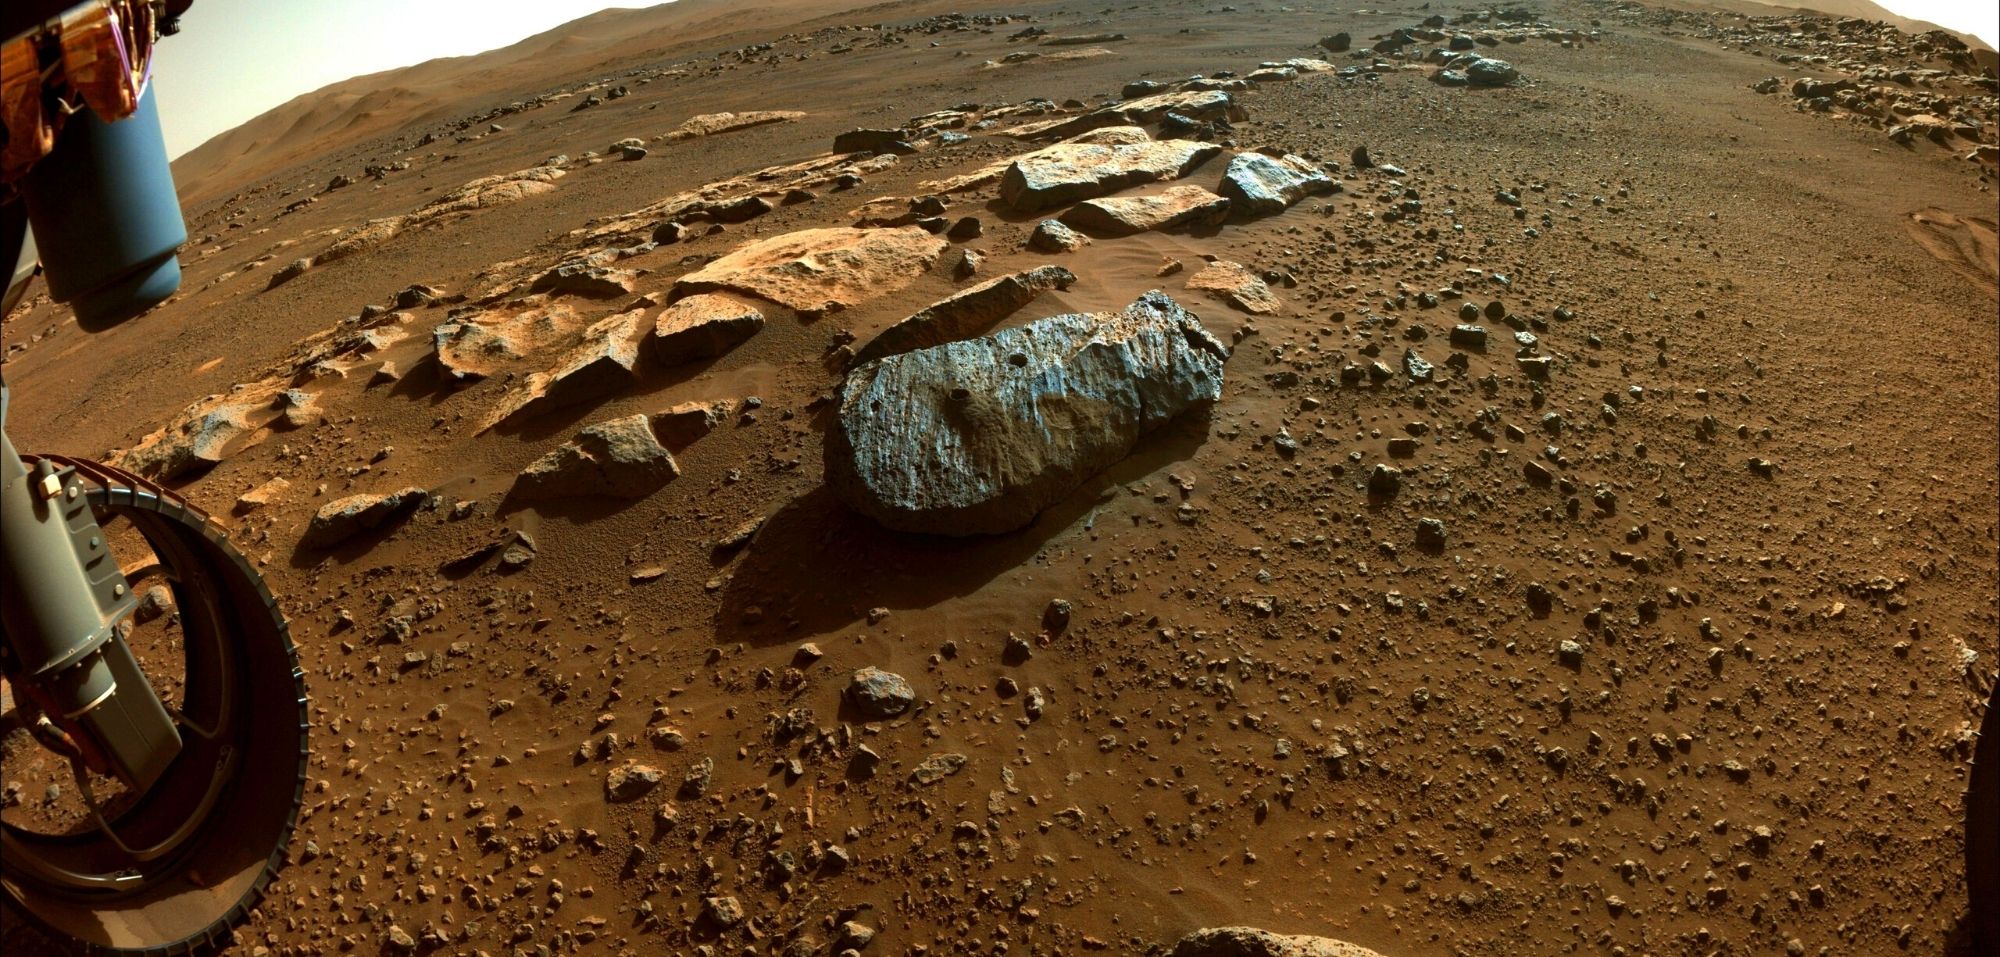 Marte: la NASA se enfrenta a un “hito importante” gracias al rover